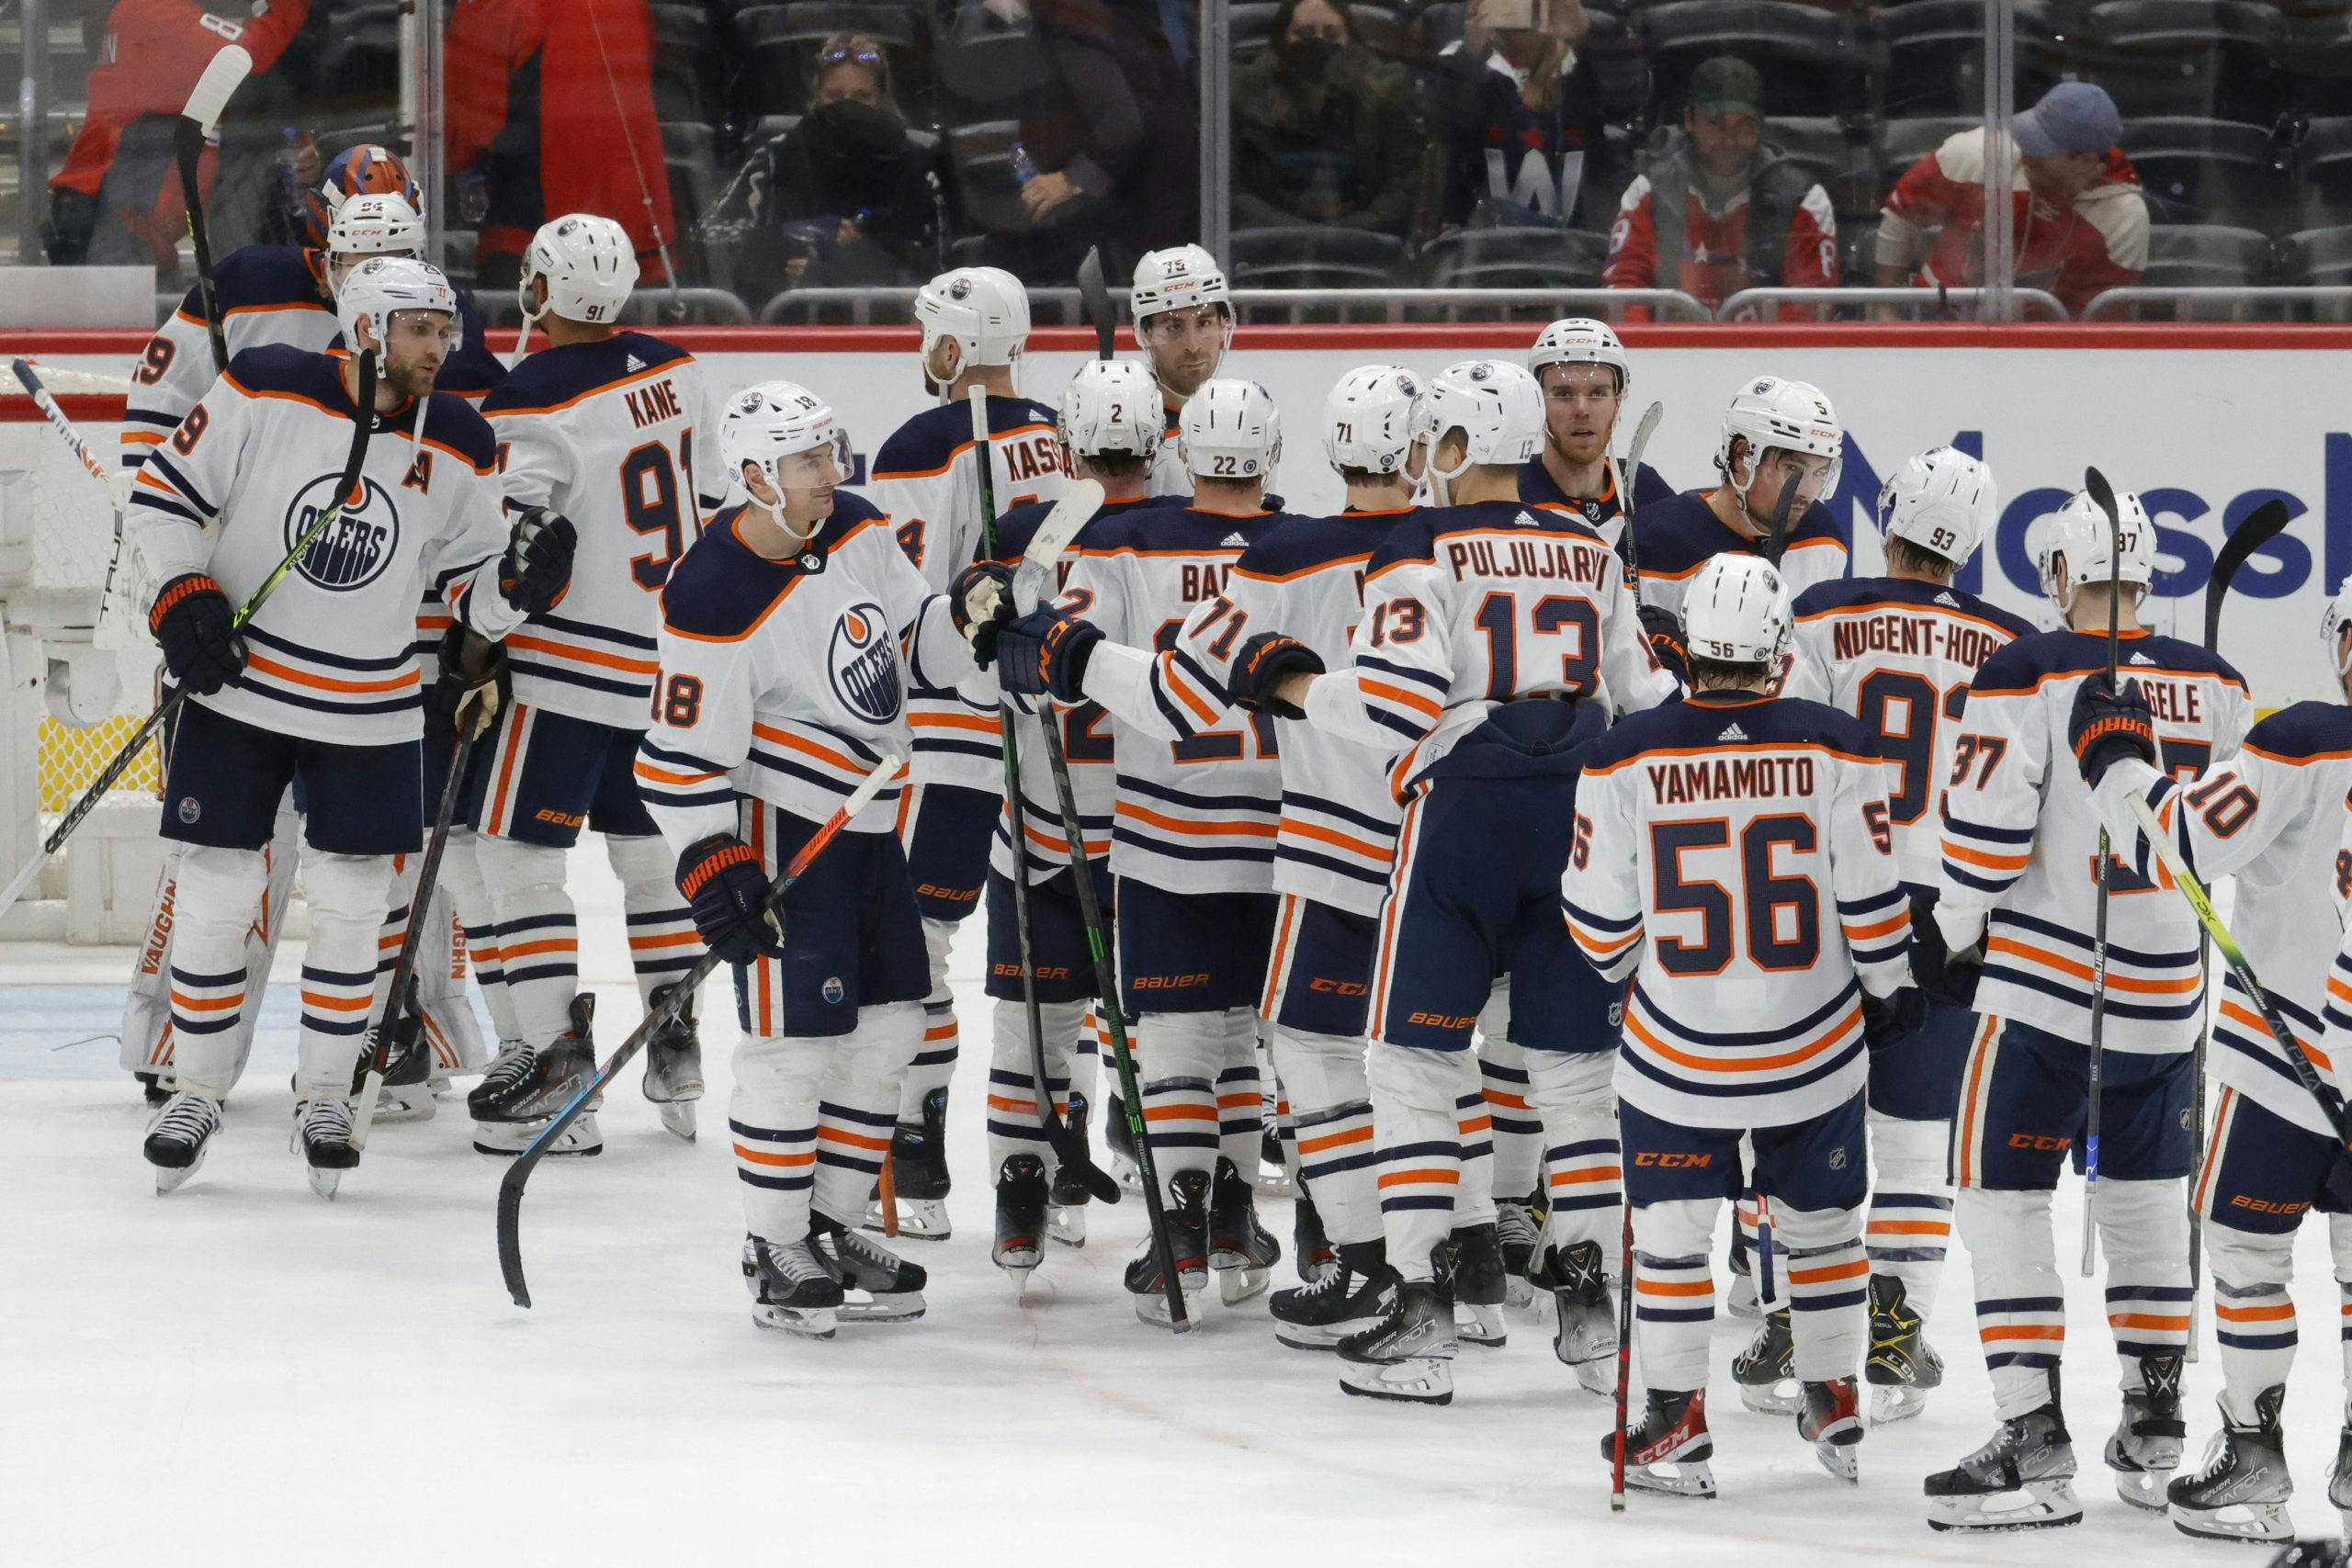 Gallery: Wild defeat Oilers 5-3